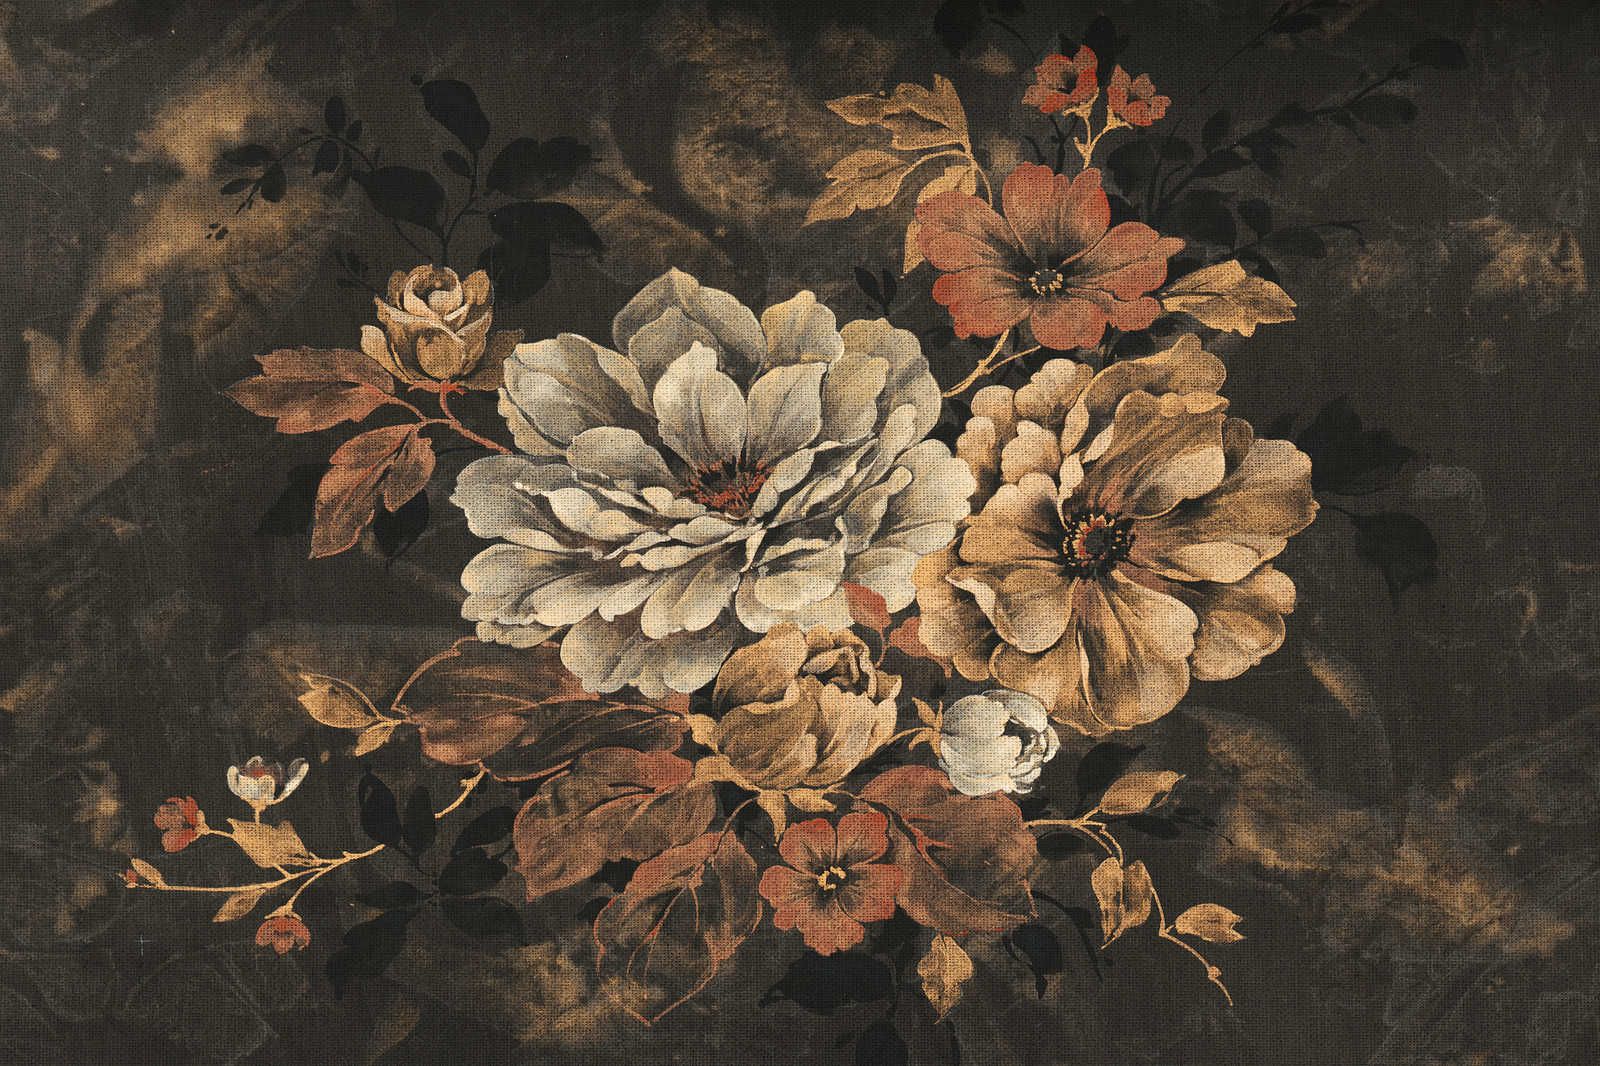             Peinture à l'huile sur toile Style de fleurs, look vintage - 0,90 m x 0,60 m
        